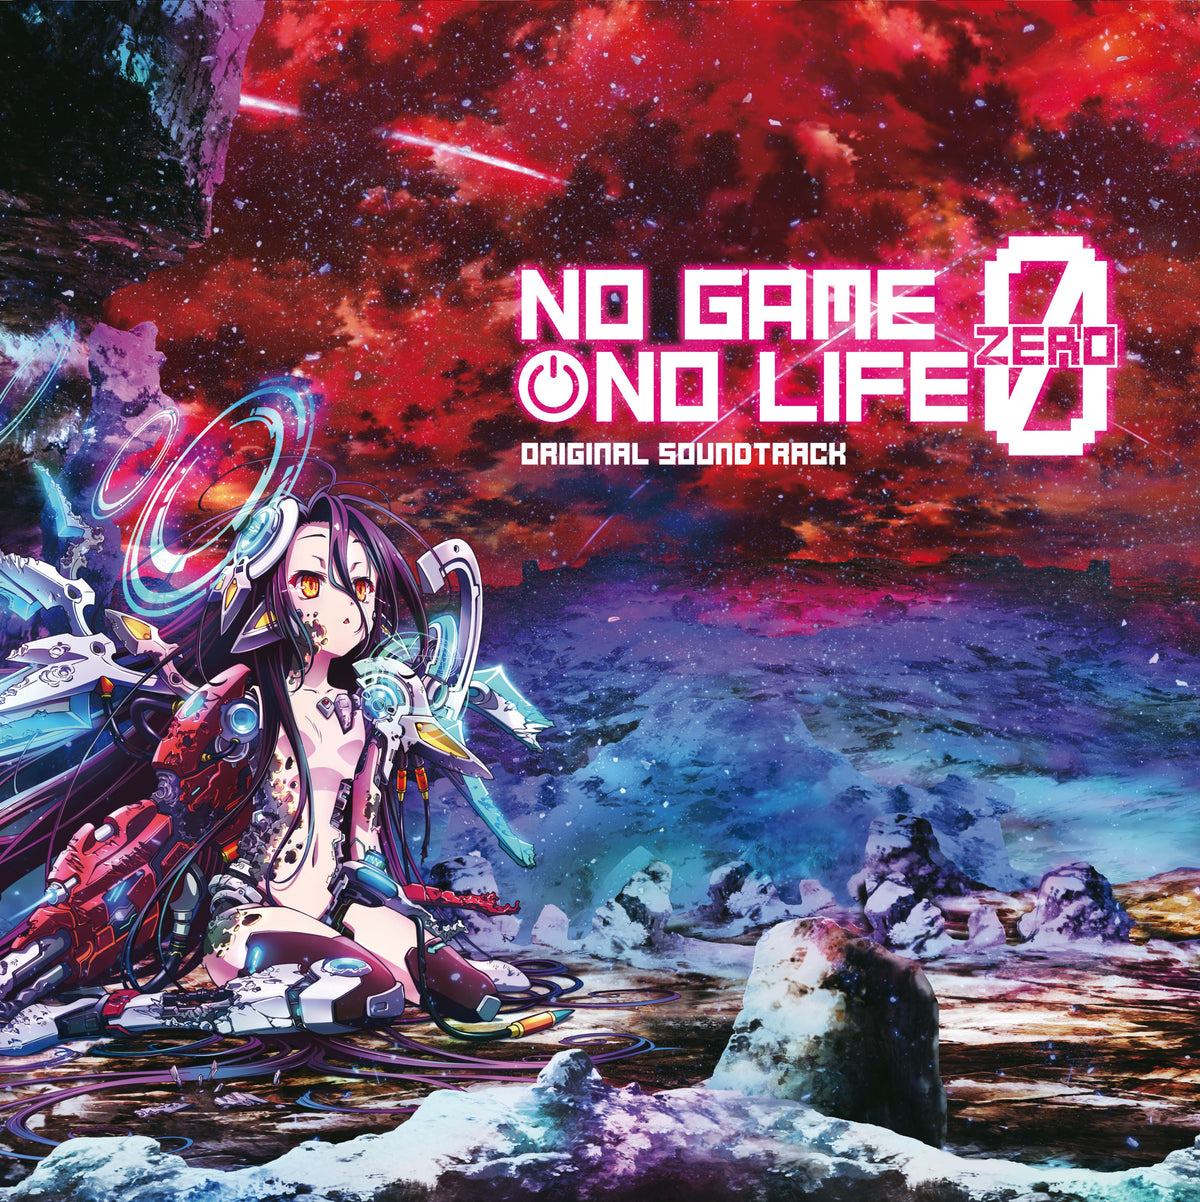 No Game No Life Zero (Original Soundtrack)